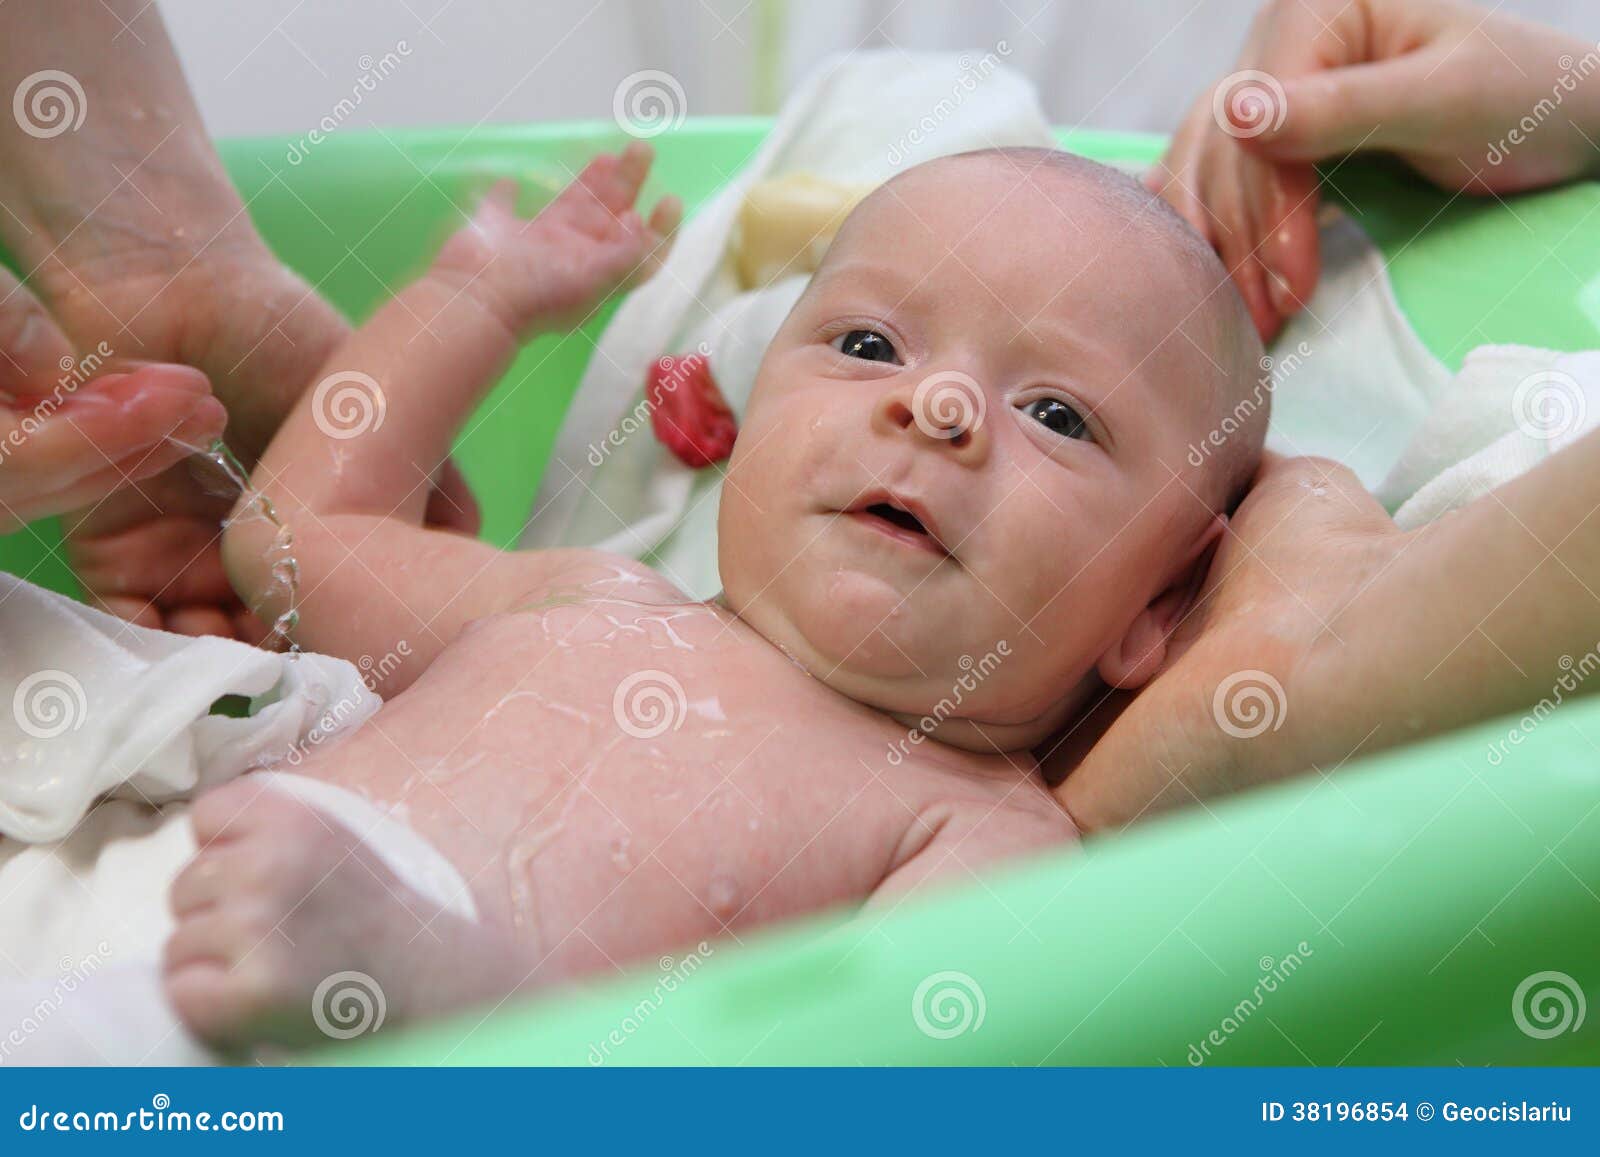 После прививки гепатита можно купать. Купание новорожденного ребенка. Купание малыша после роддома. Гигиена новорожденных девочек.